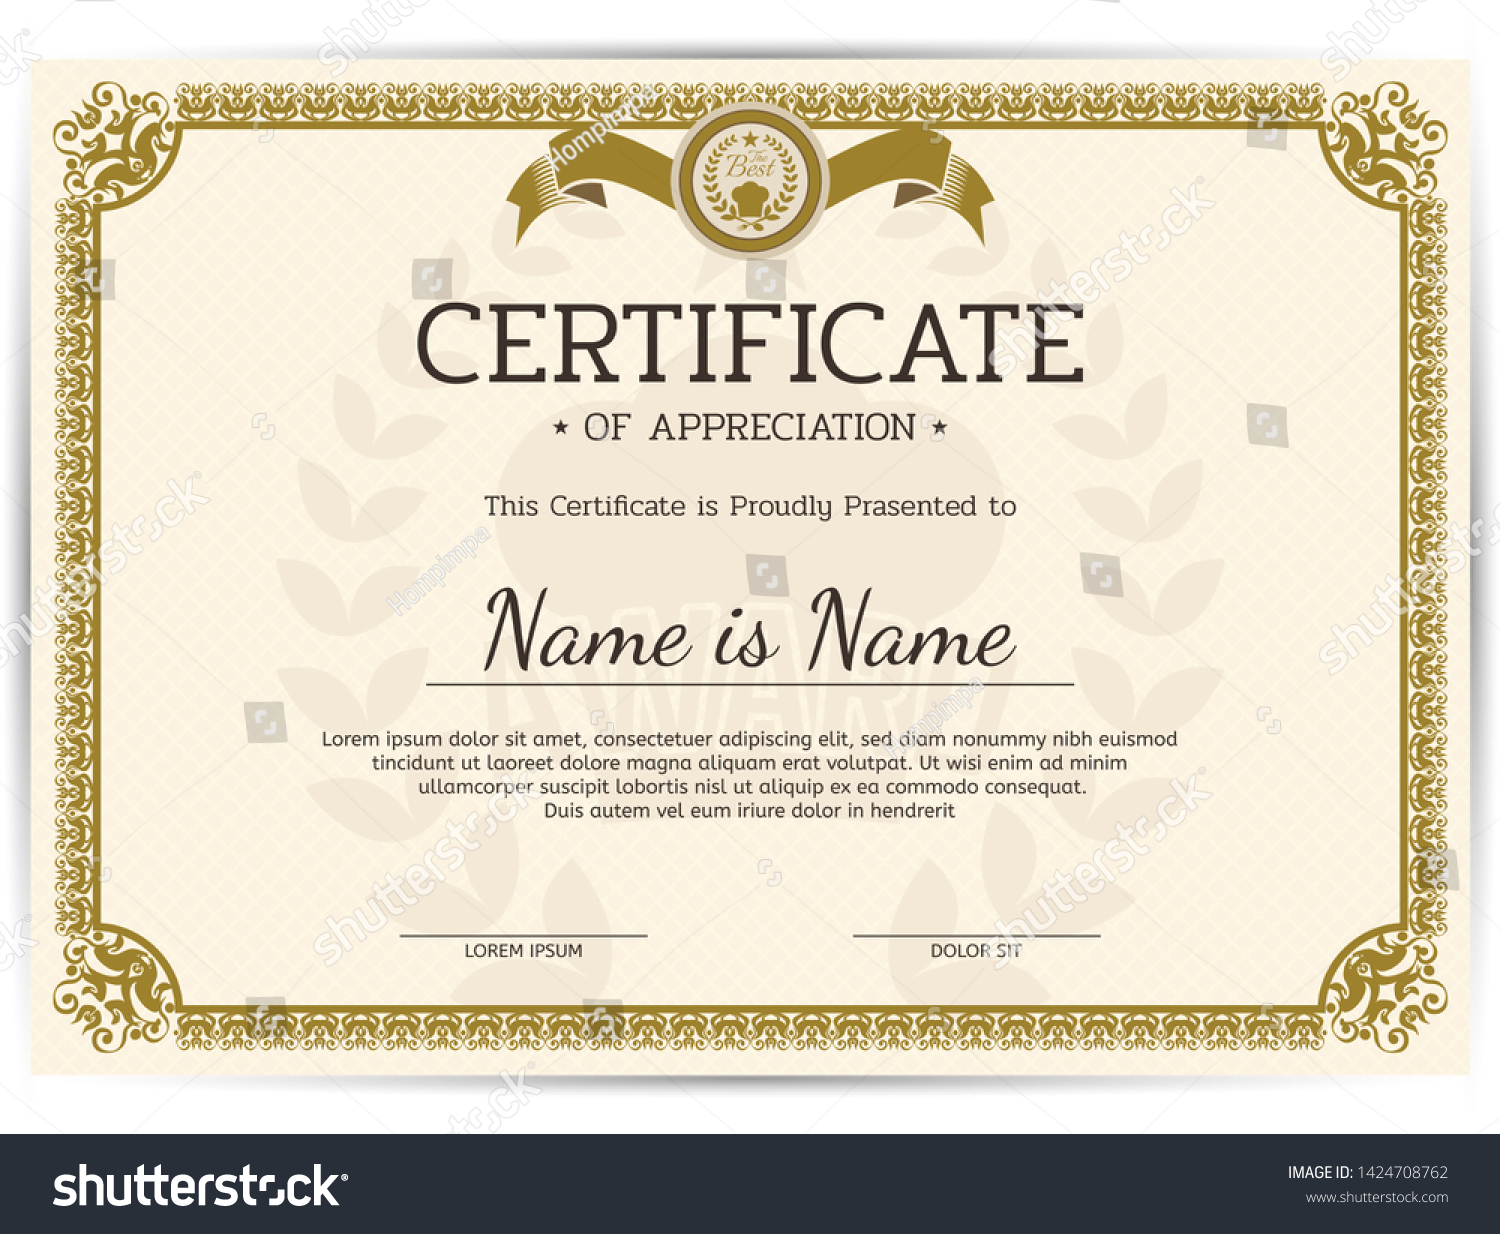 Vintage Certificate Appreciation Award Template Template Stock Intended For Award Certificate Border Template